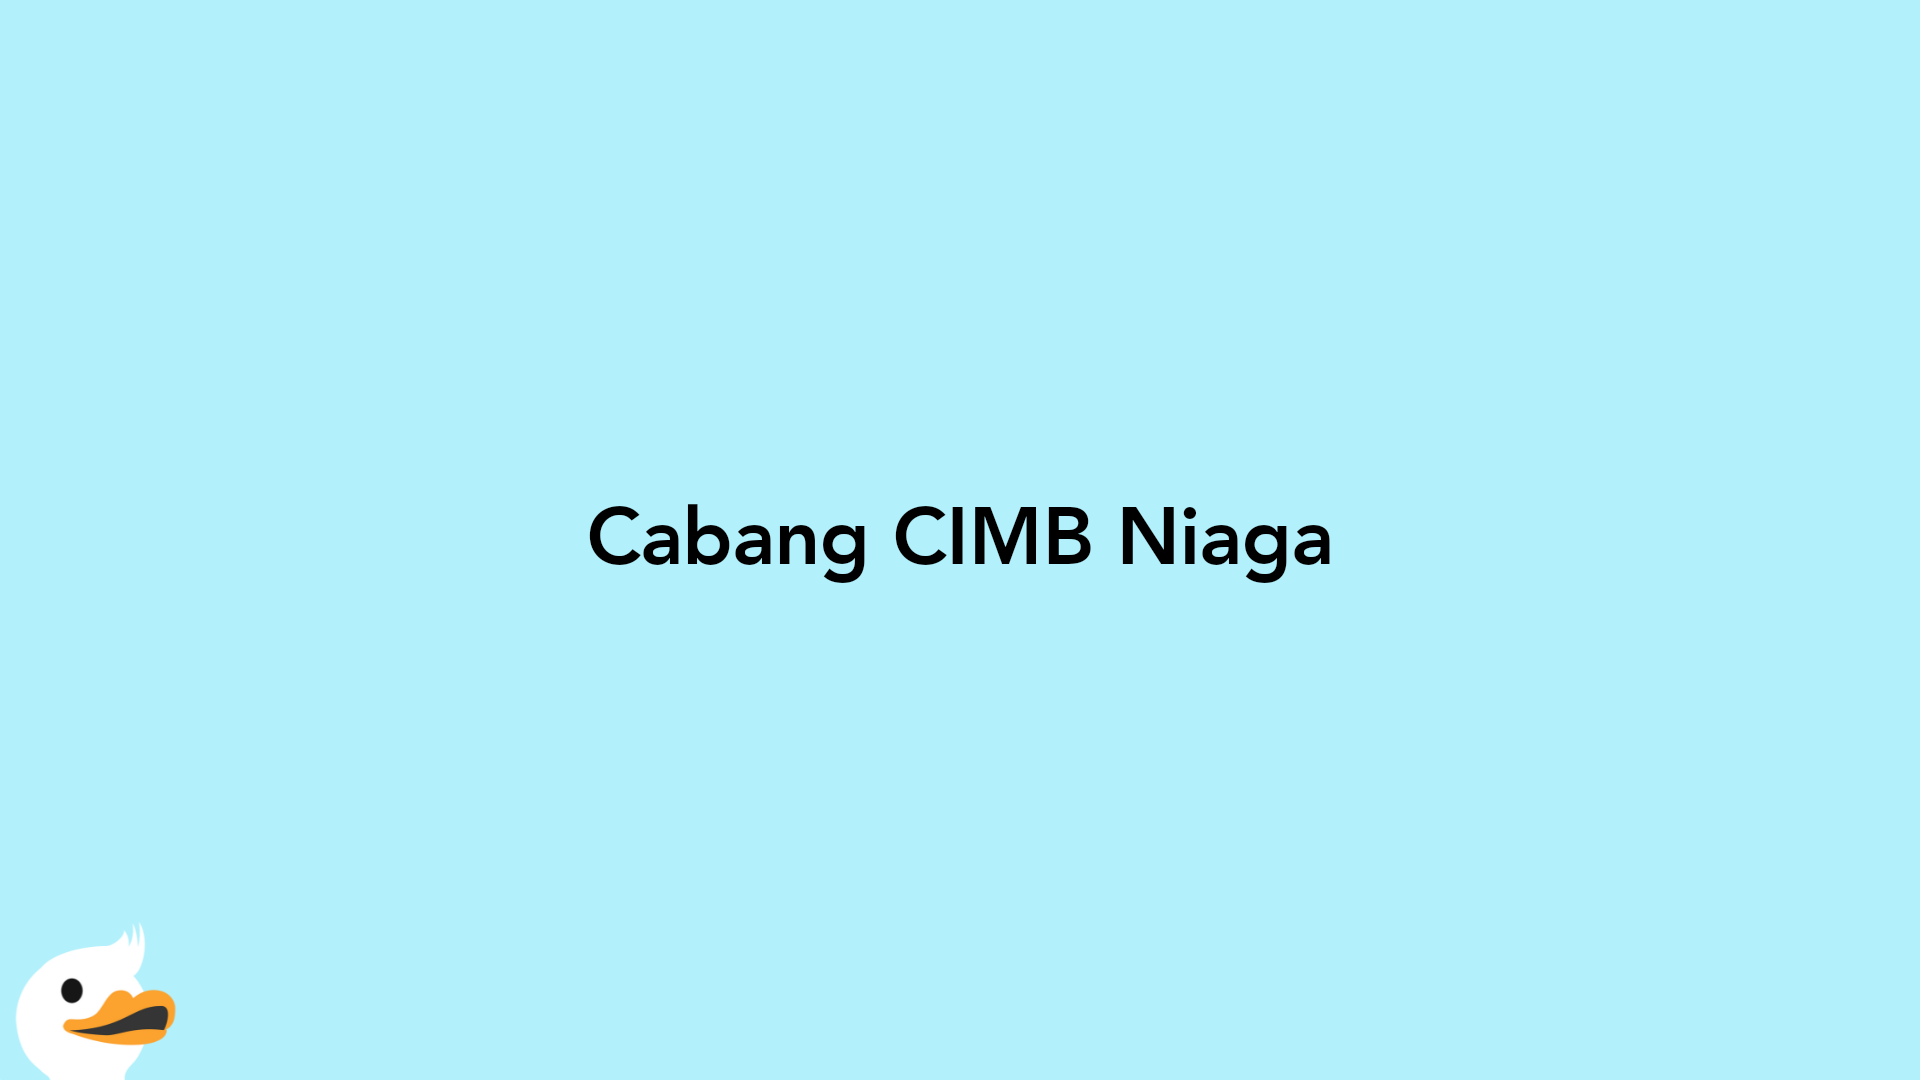 Cabang CIMB Niaga